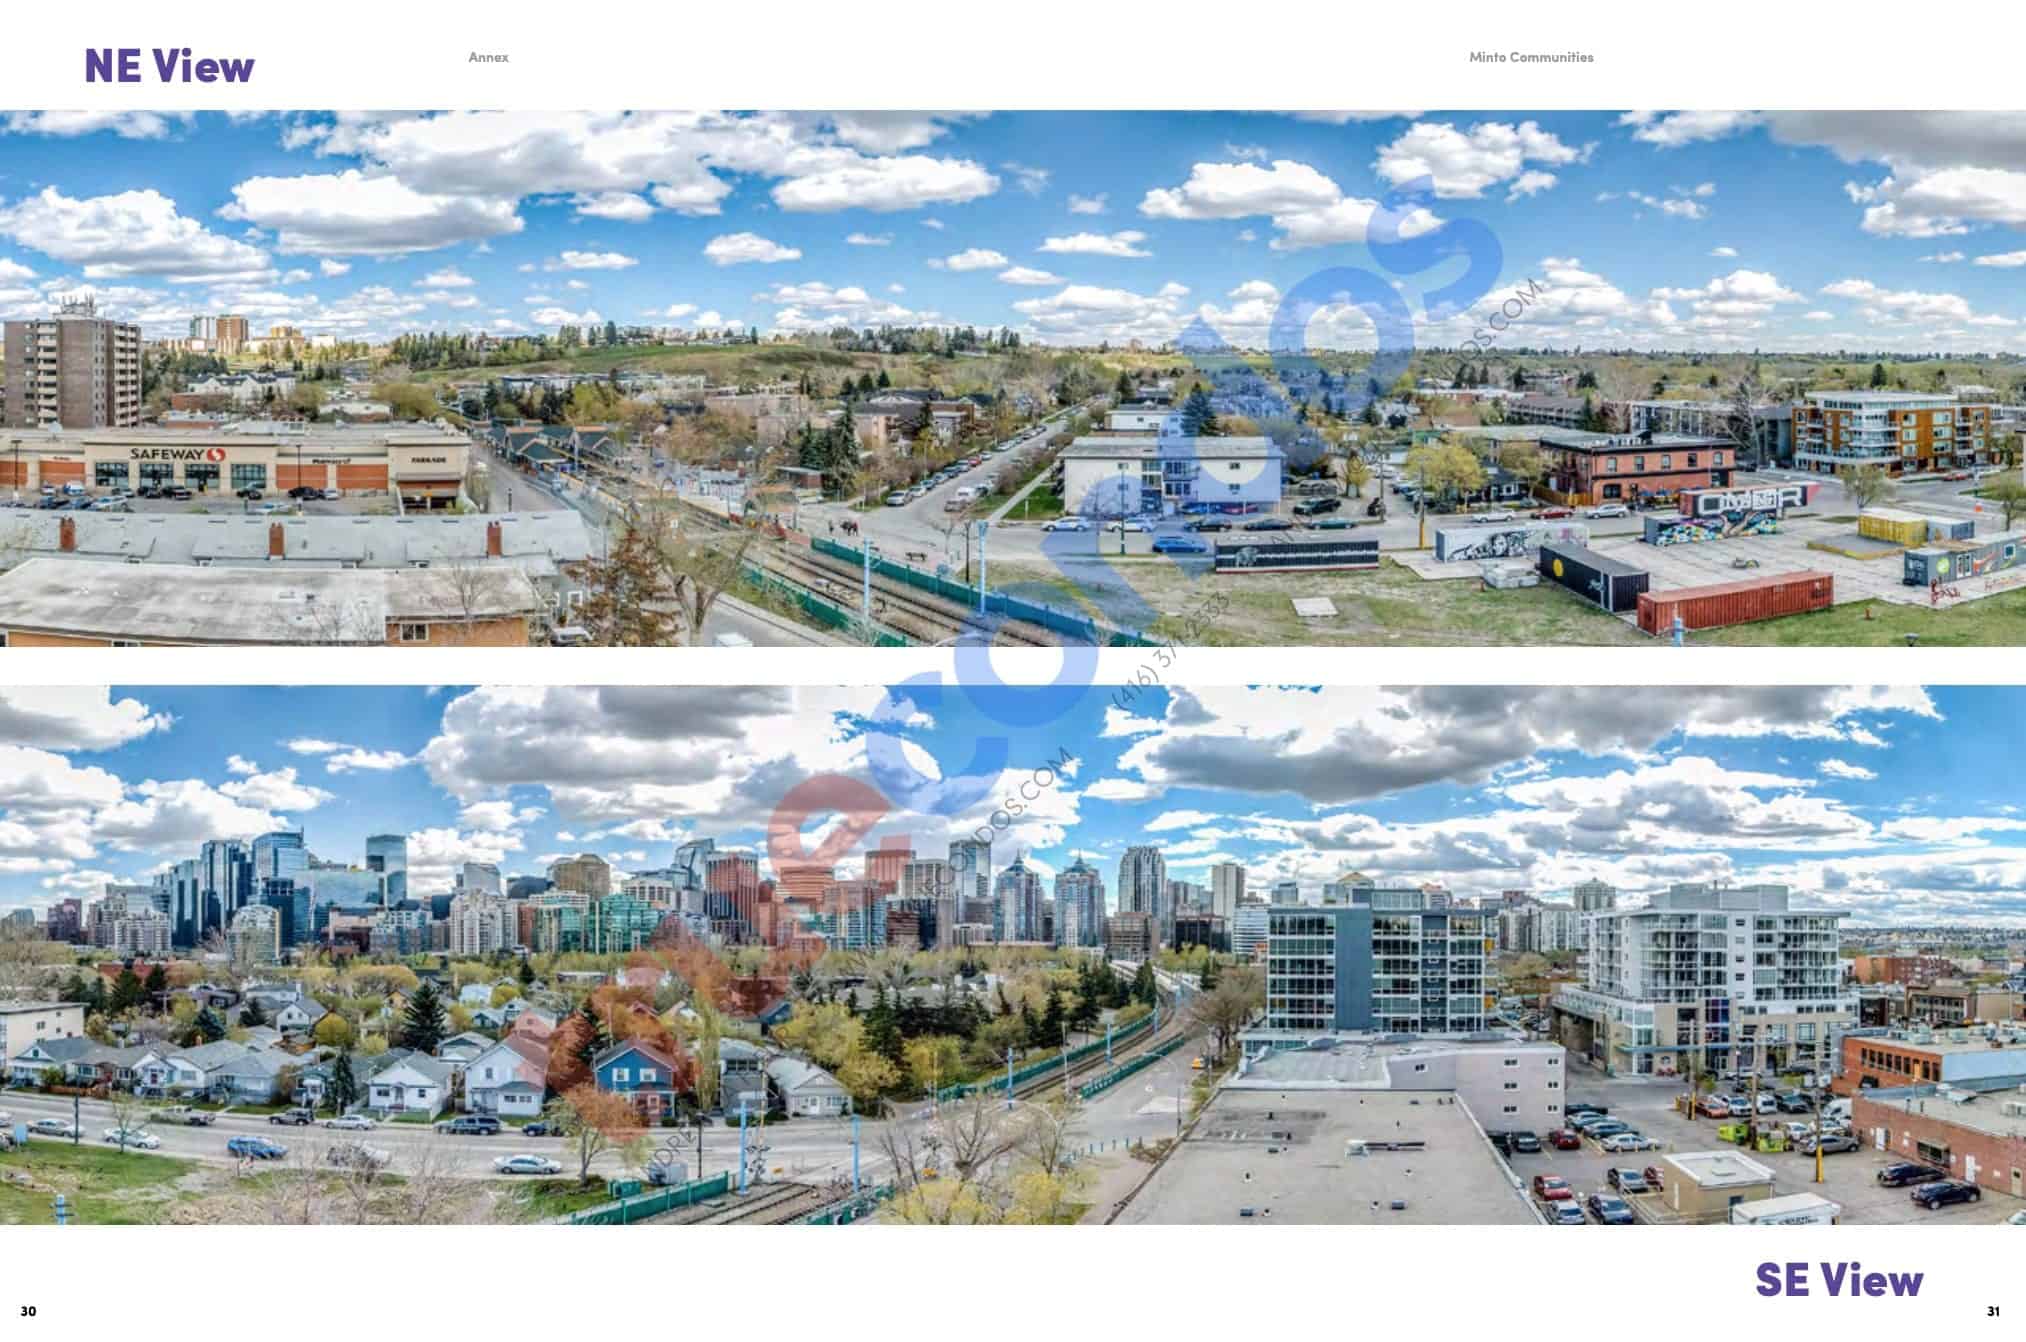 The Annex Condos in Calgary Views True Condos